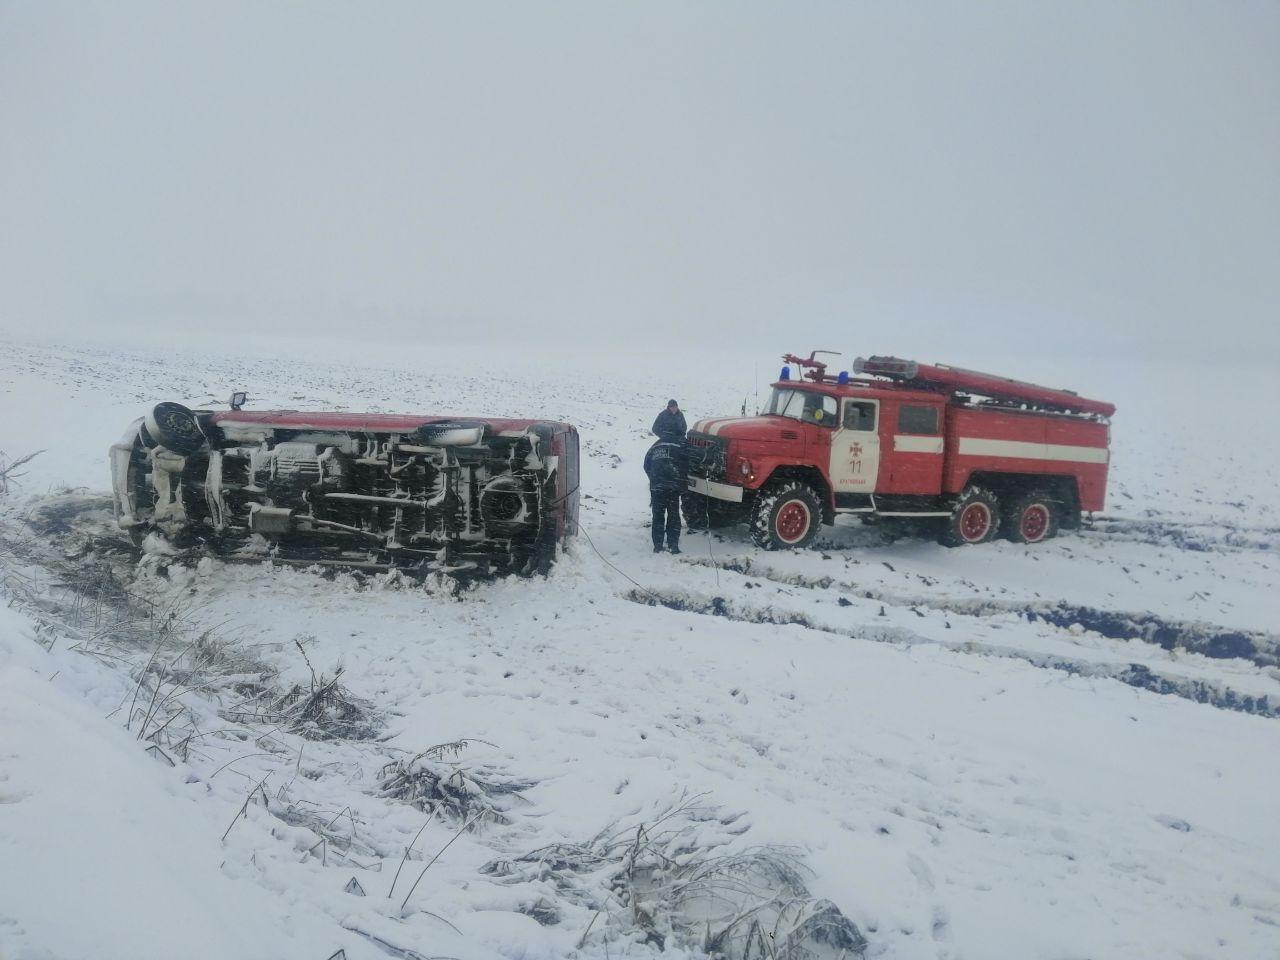 Сумська область: за минулу добу рятувальники 7 разів залучались для надання допомоги в буксируванні автомобілів зі снігових заметів (ВІДЕО)